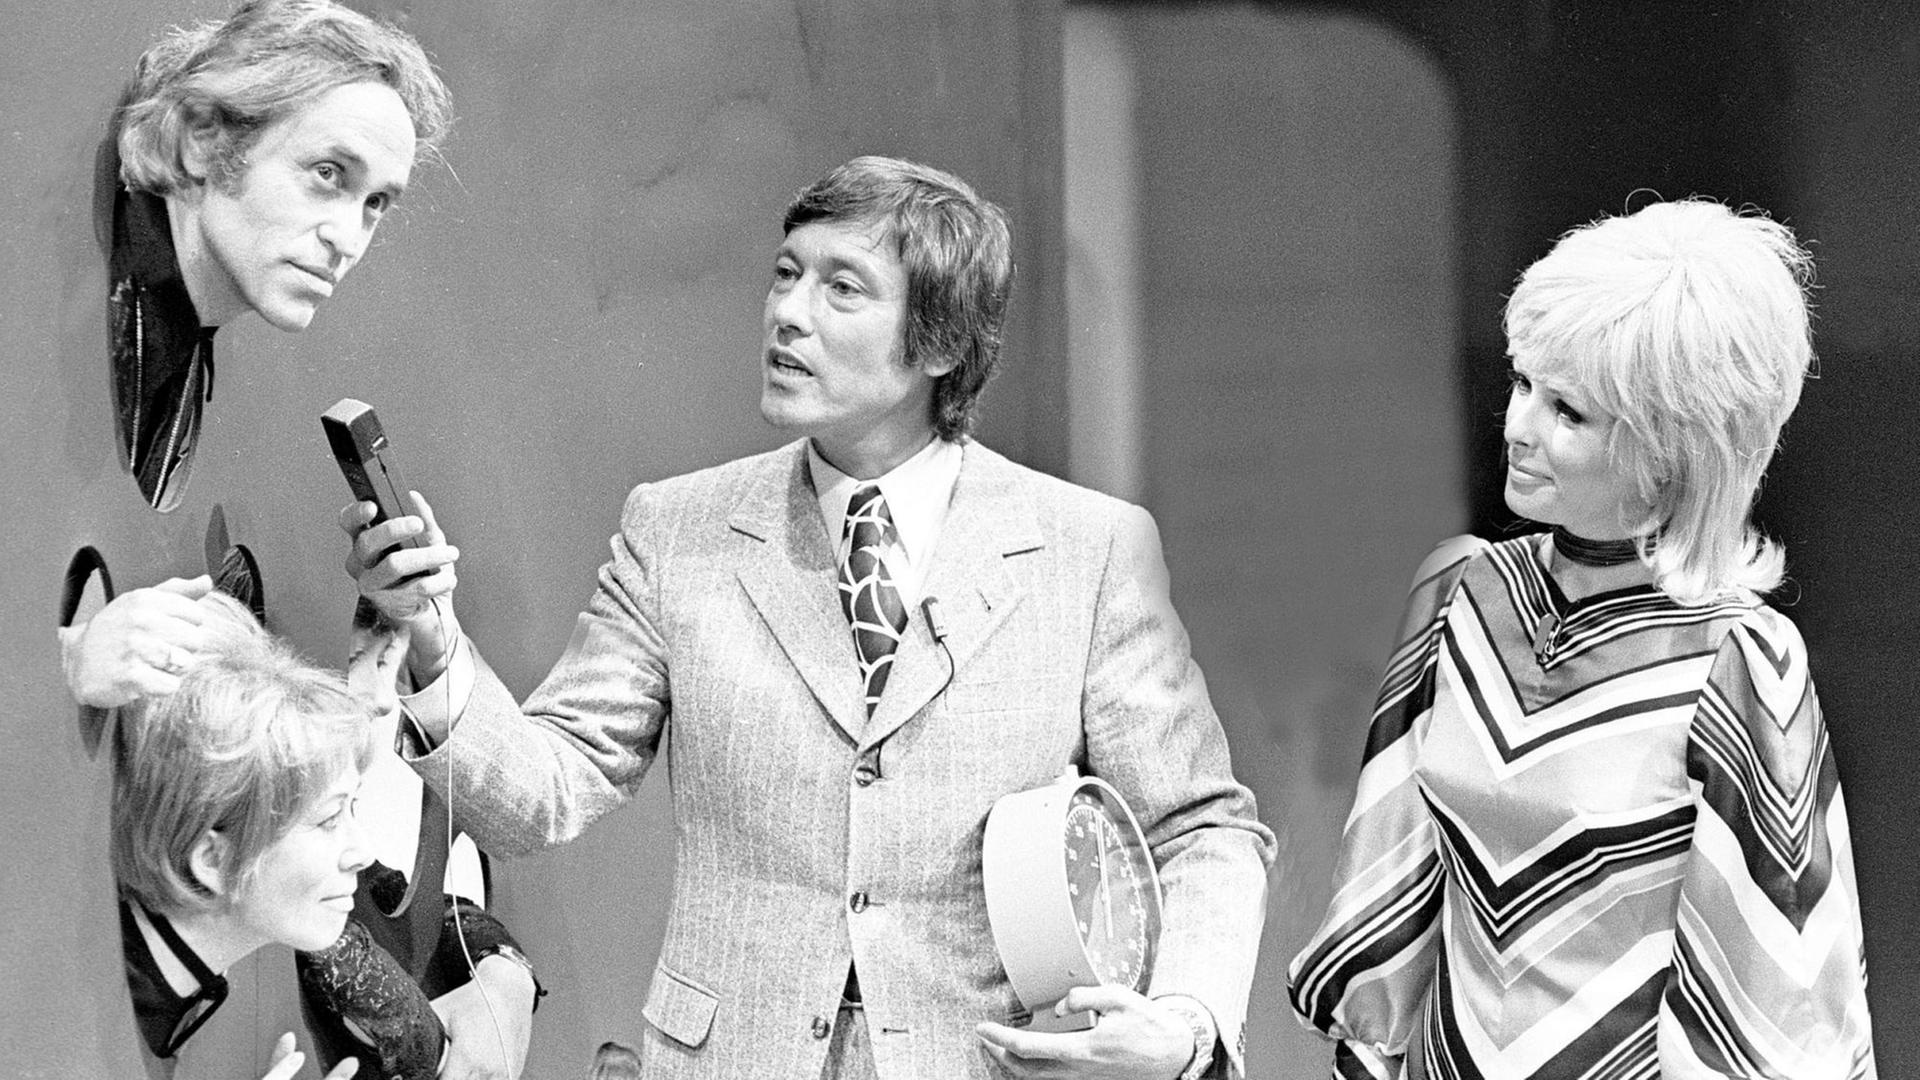 Eine Sequenz aus der TV-Sendung "Wünsch Dir was" in der Wiener Stadthalle im März 1971. 24 Folgen lang wurde die Show bis zu ihrer Einstellung vom Ehepaar Dietmar Schönherr und Vivi Bach (ganz rechts) moderiert.